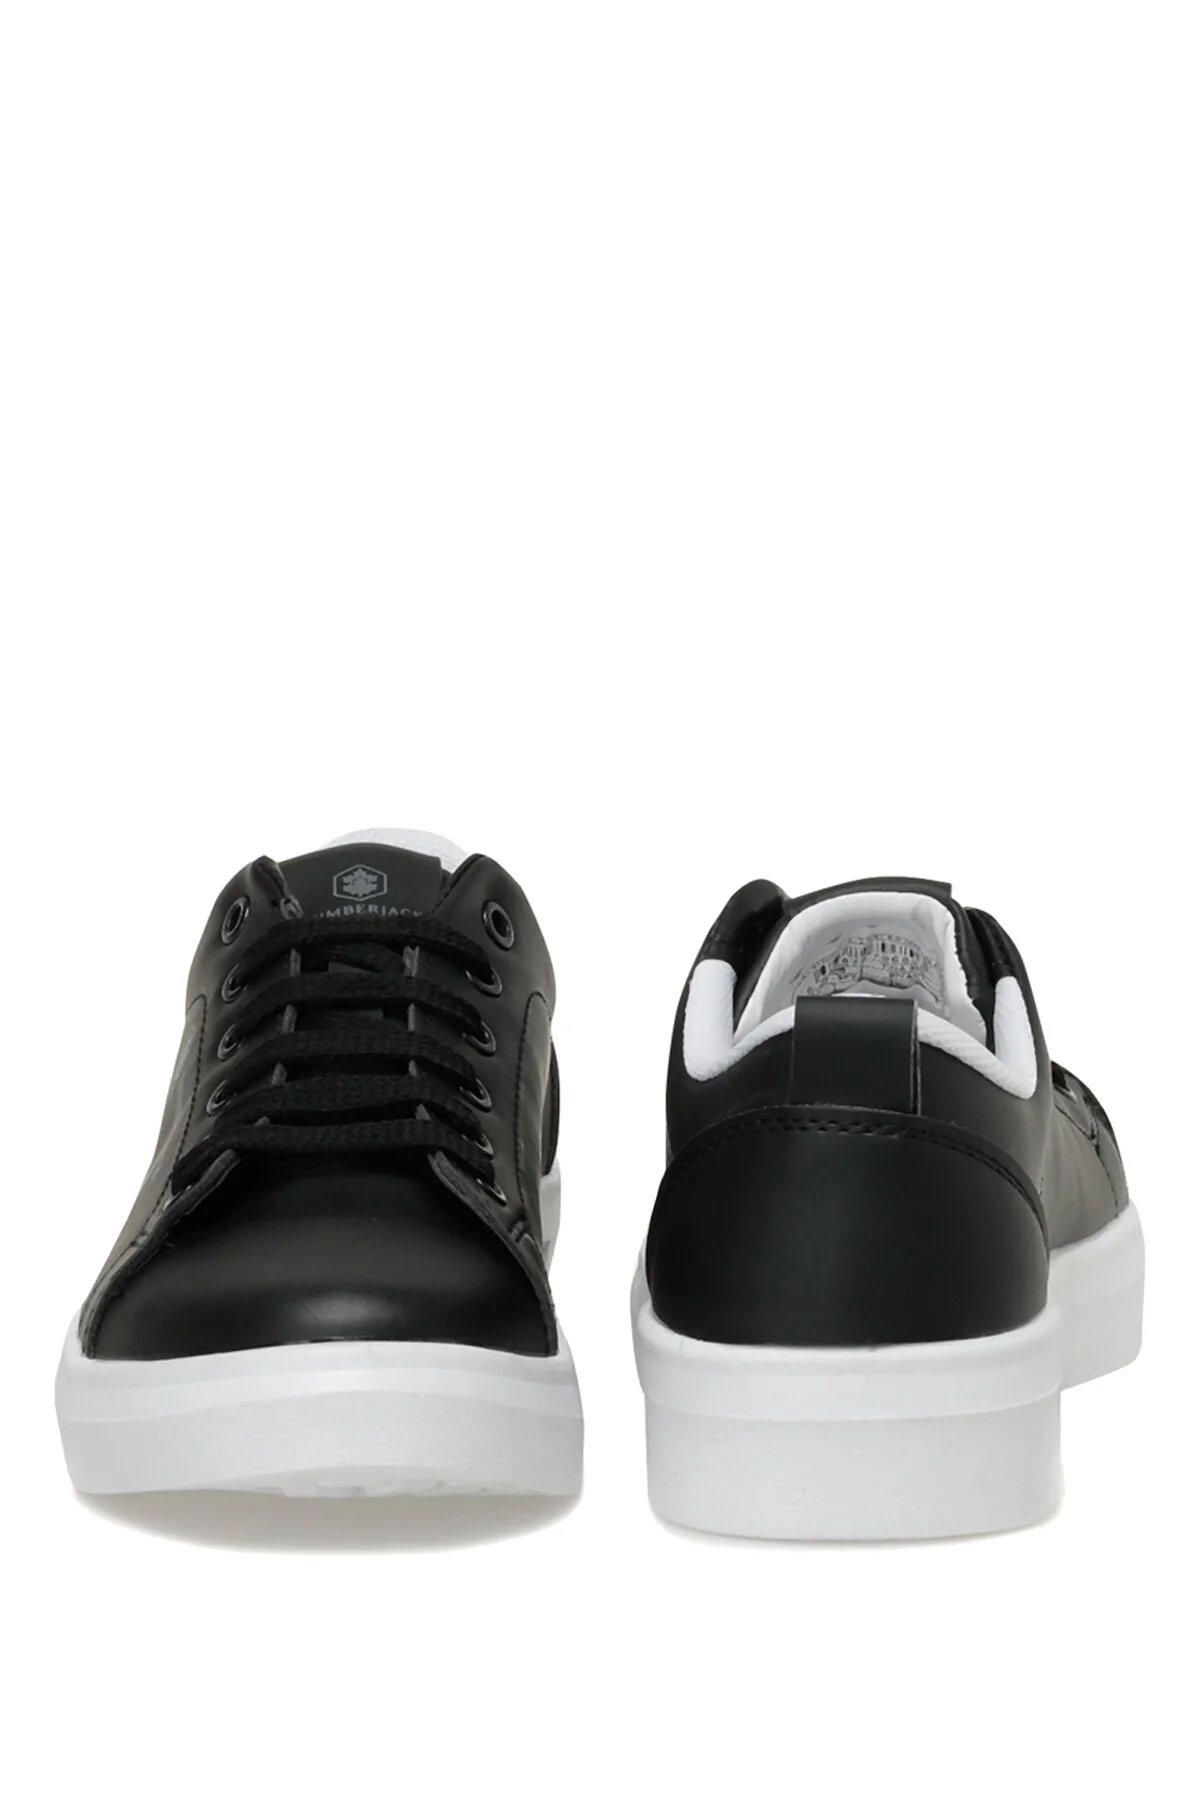 TINA 3FX Kadın Sneaker Spor Ayakkabı-Siyah - Thumbnail